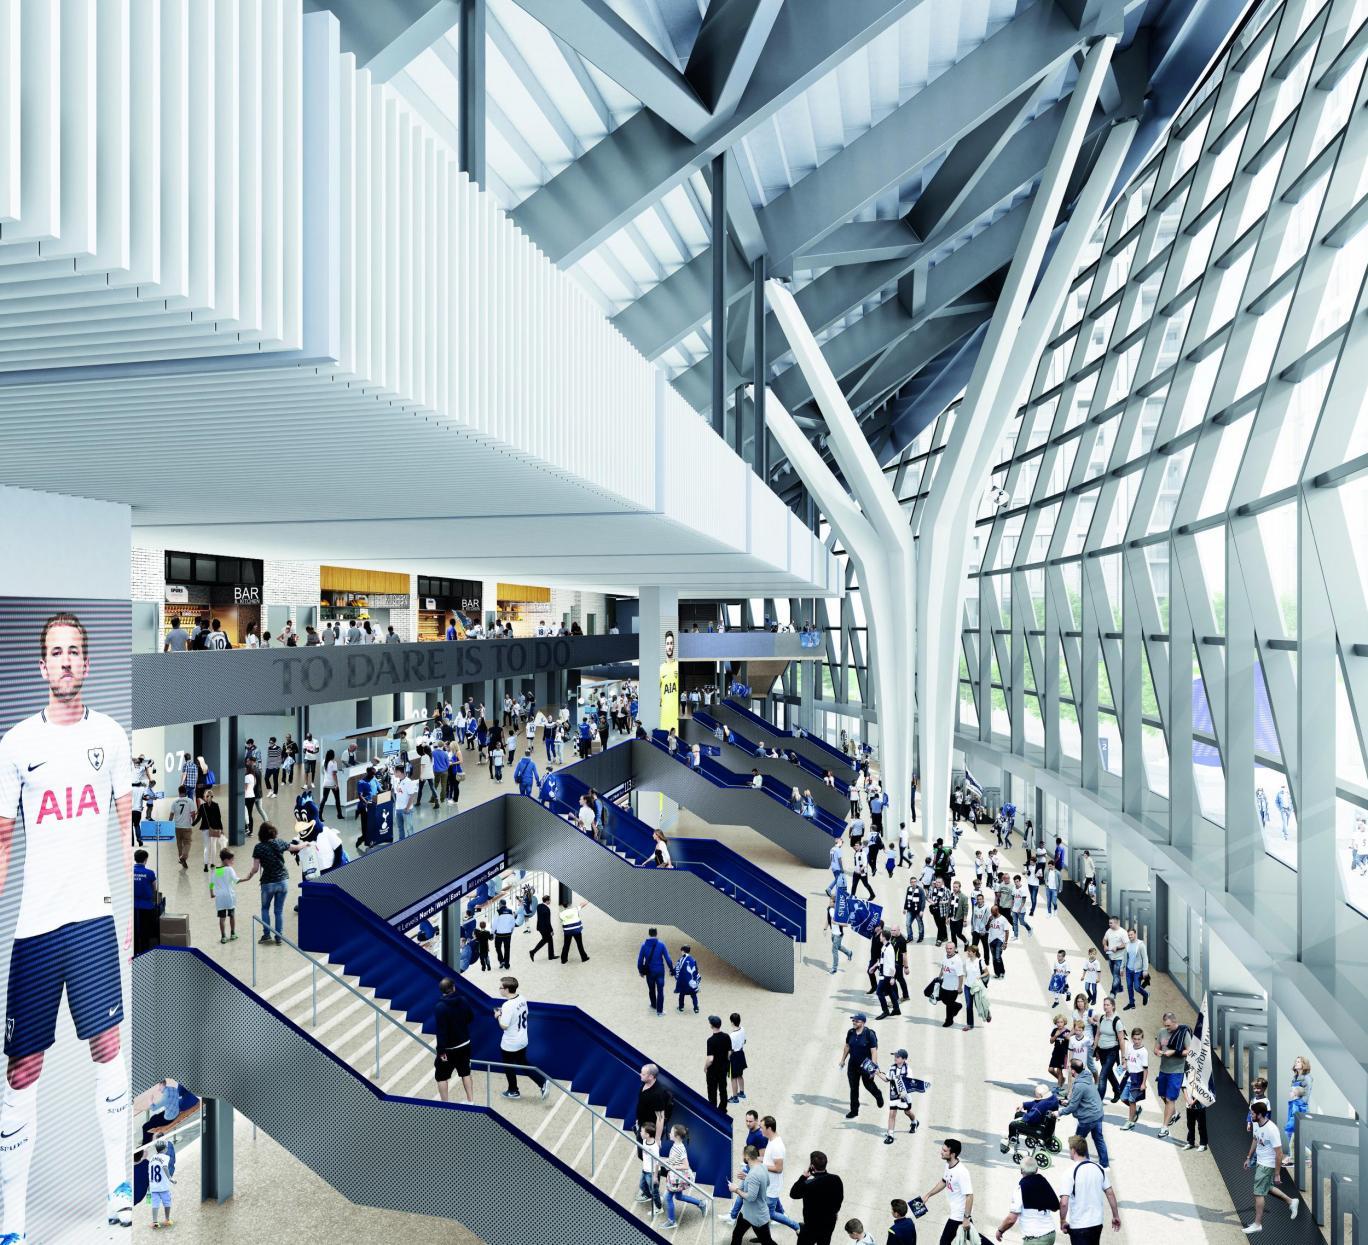 Revealed: Brand new renderings of Tottenham Hotspur's White Hart Lane home